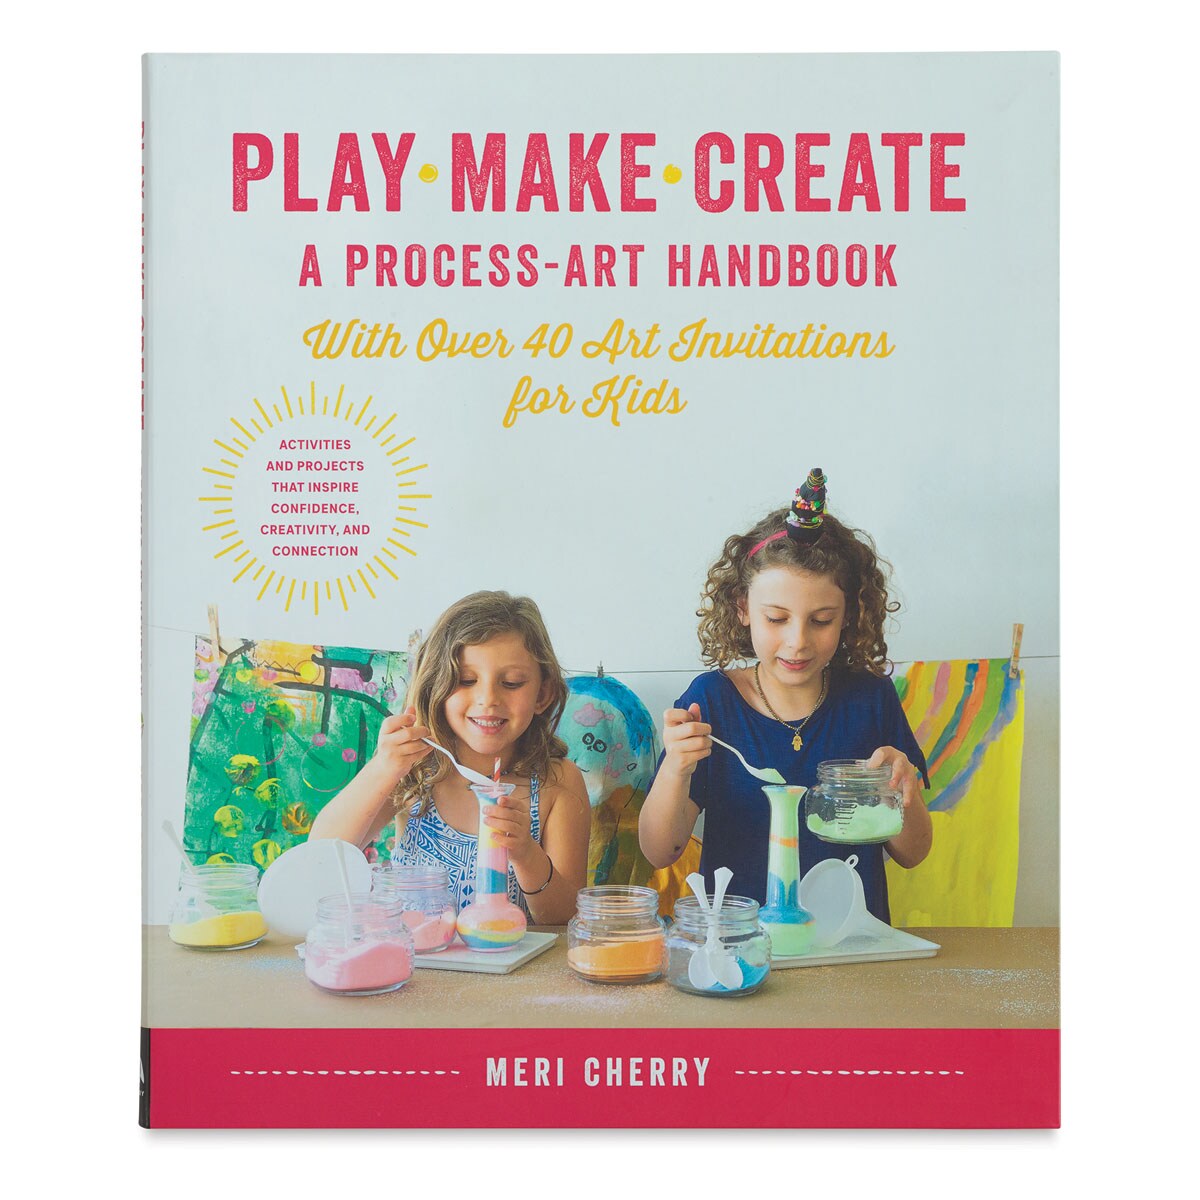 Play, Make, Create: A Process-Art Handbook